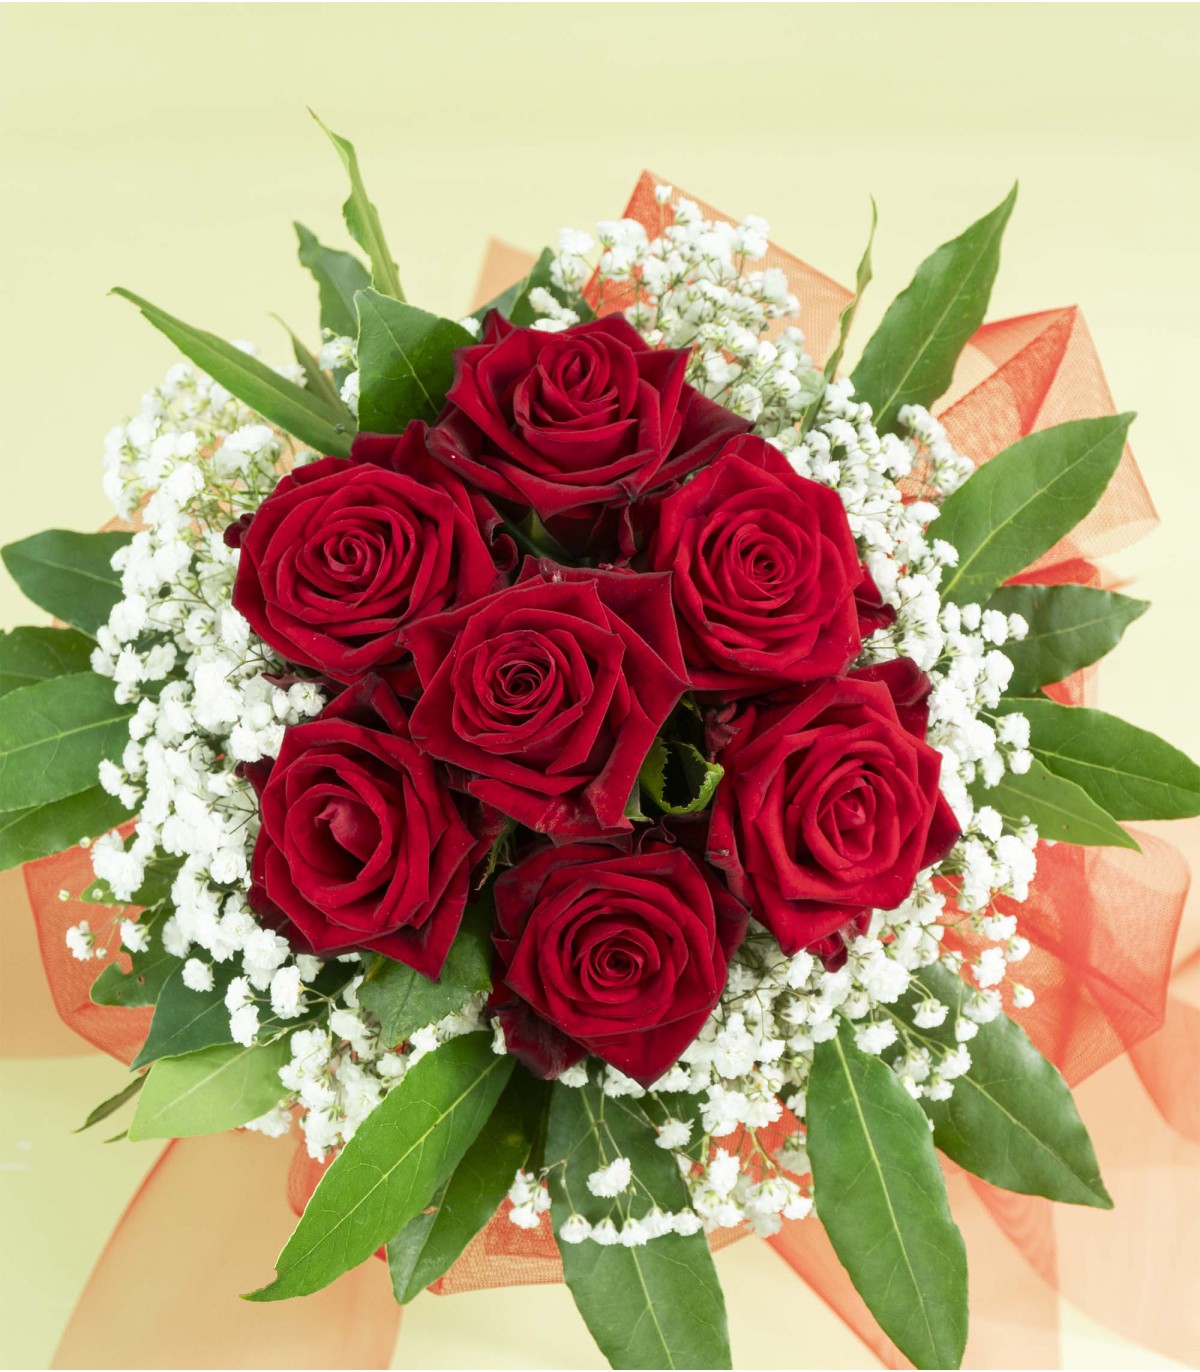 Coccolo - Bouquet di 7 rose rosse per festeggiare San Valentino